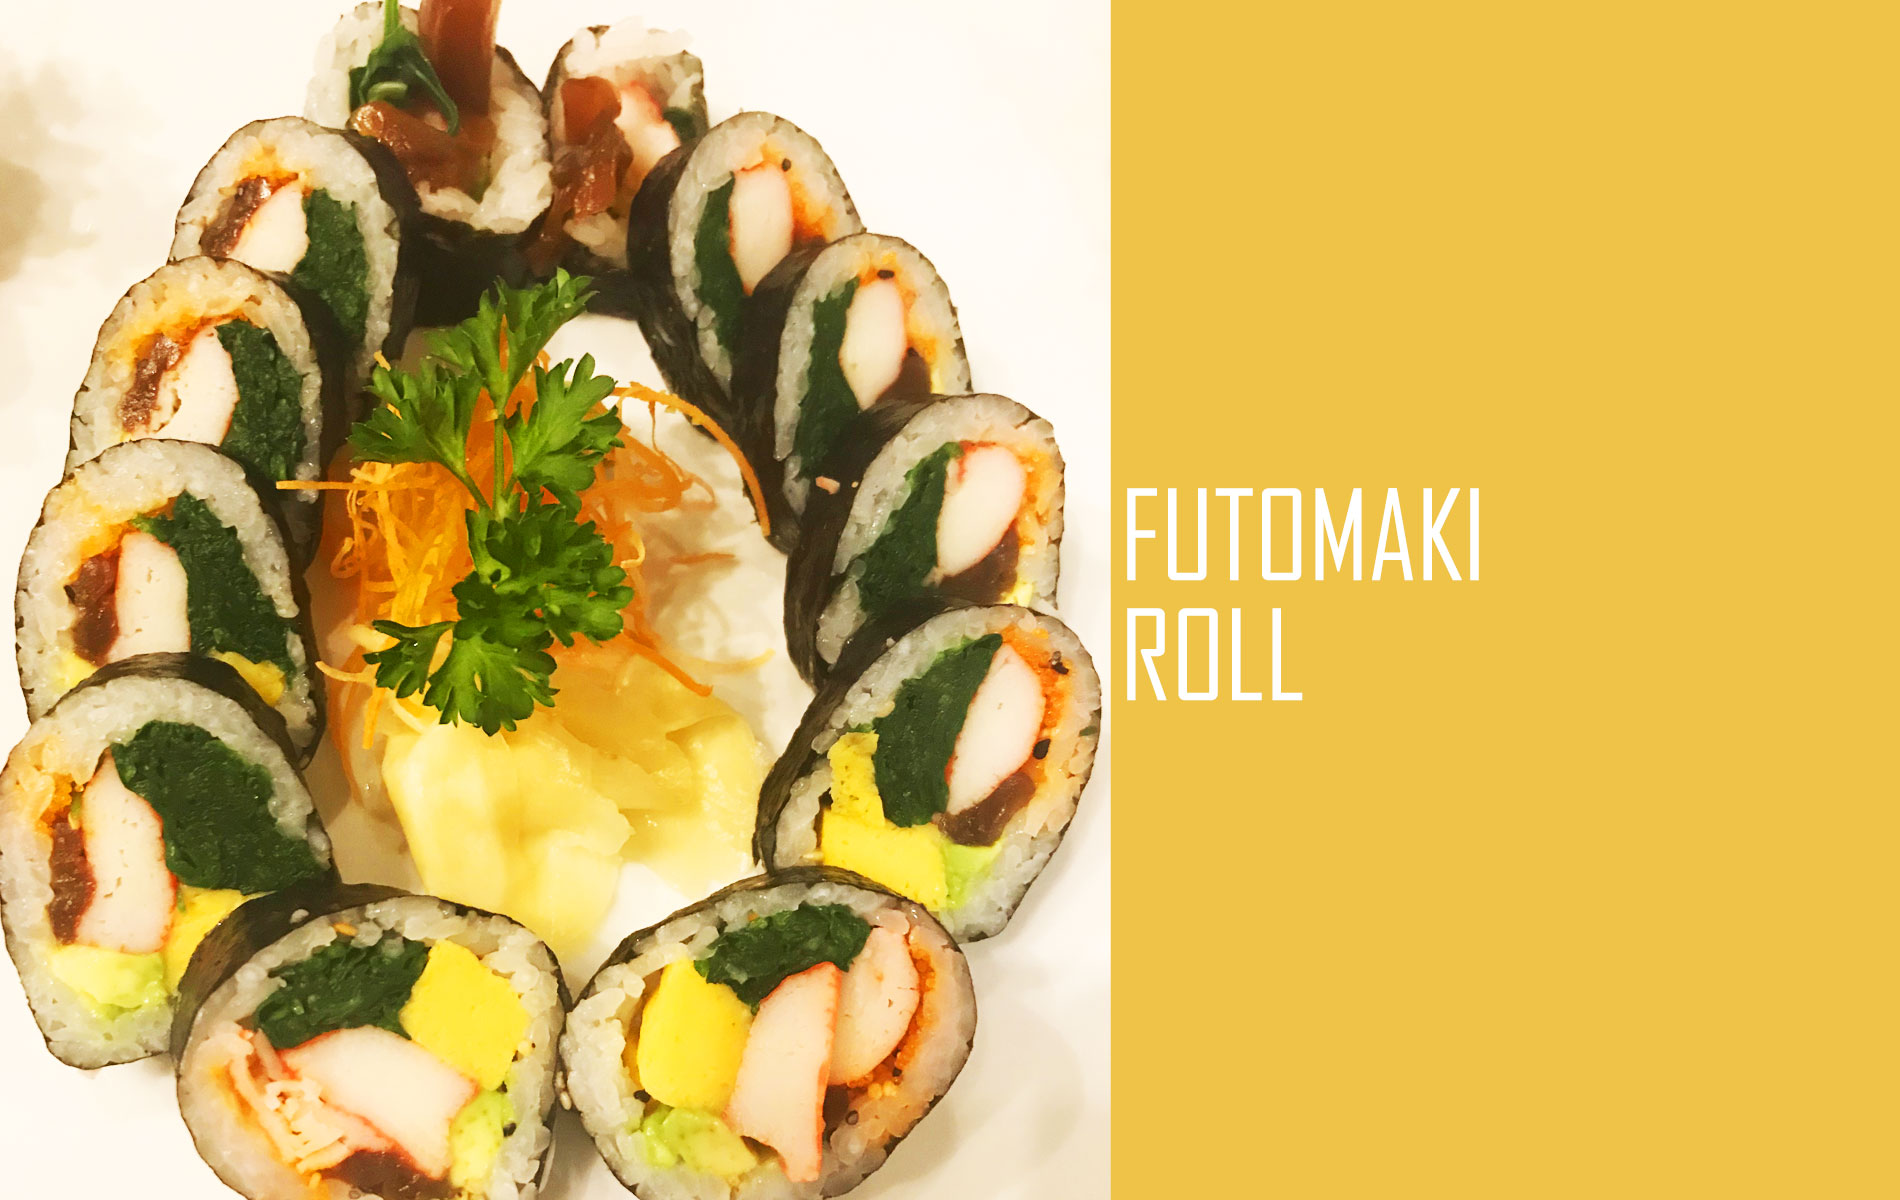 Futomaki Roll